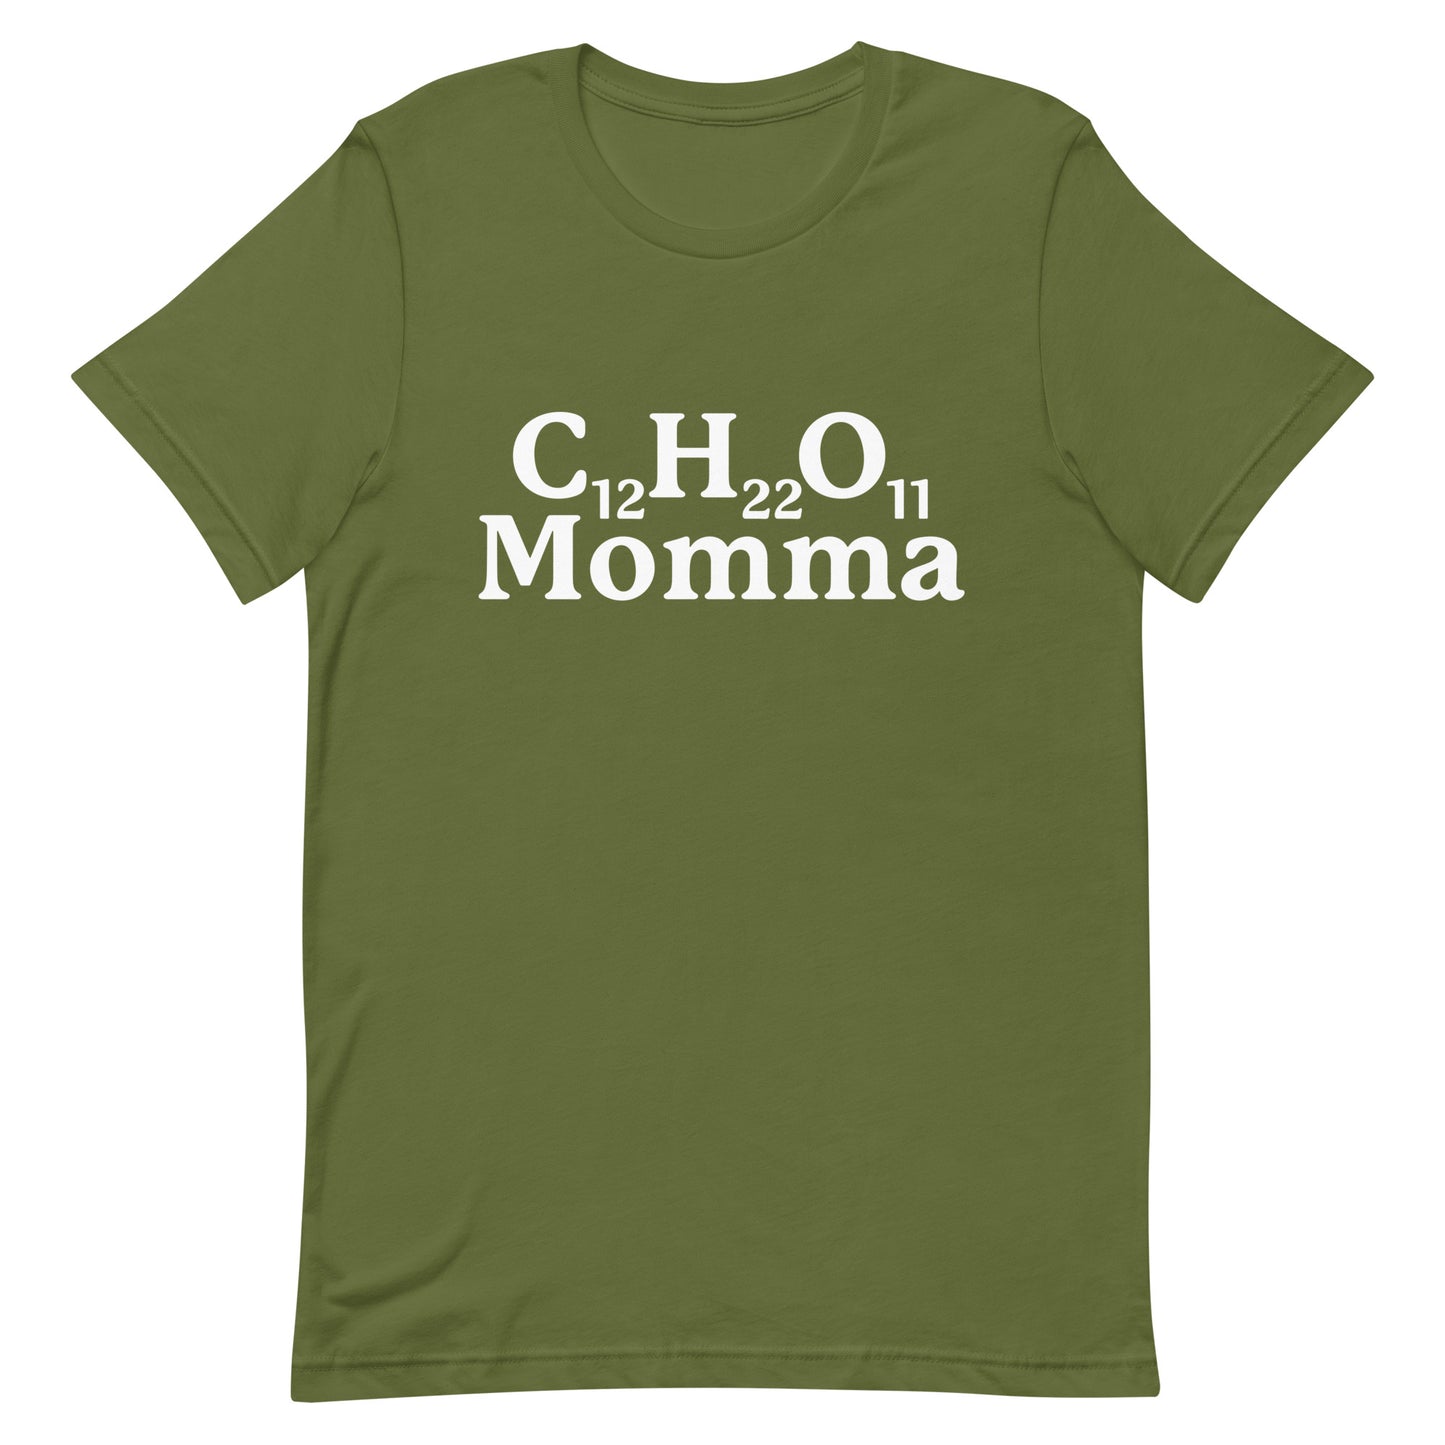 C12H22O11 Momma (Sugar Momma) Unisex t-shirt